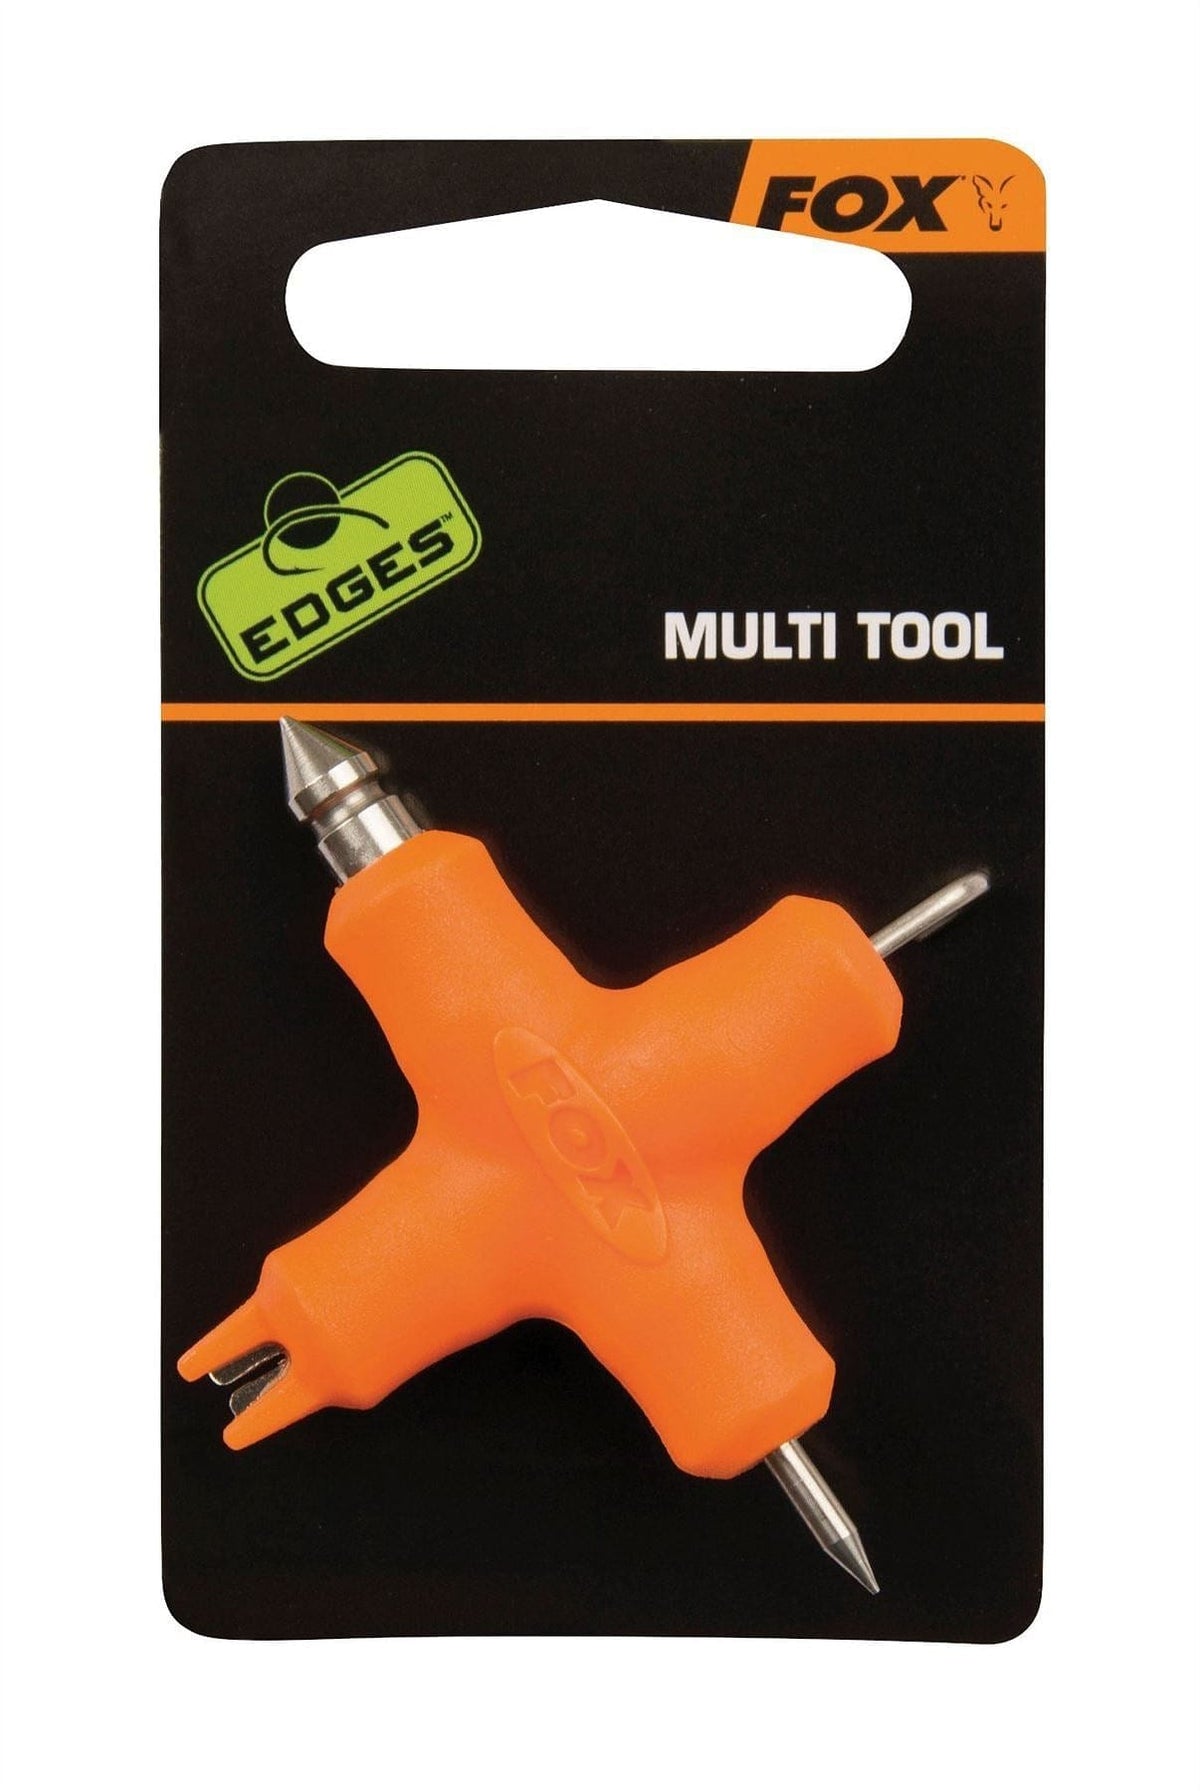 FOX Edges Carp Baiting Tools, Needles Drills Scissors